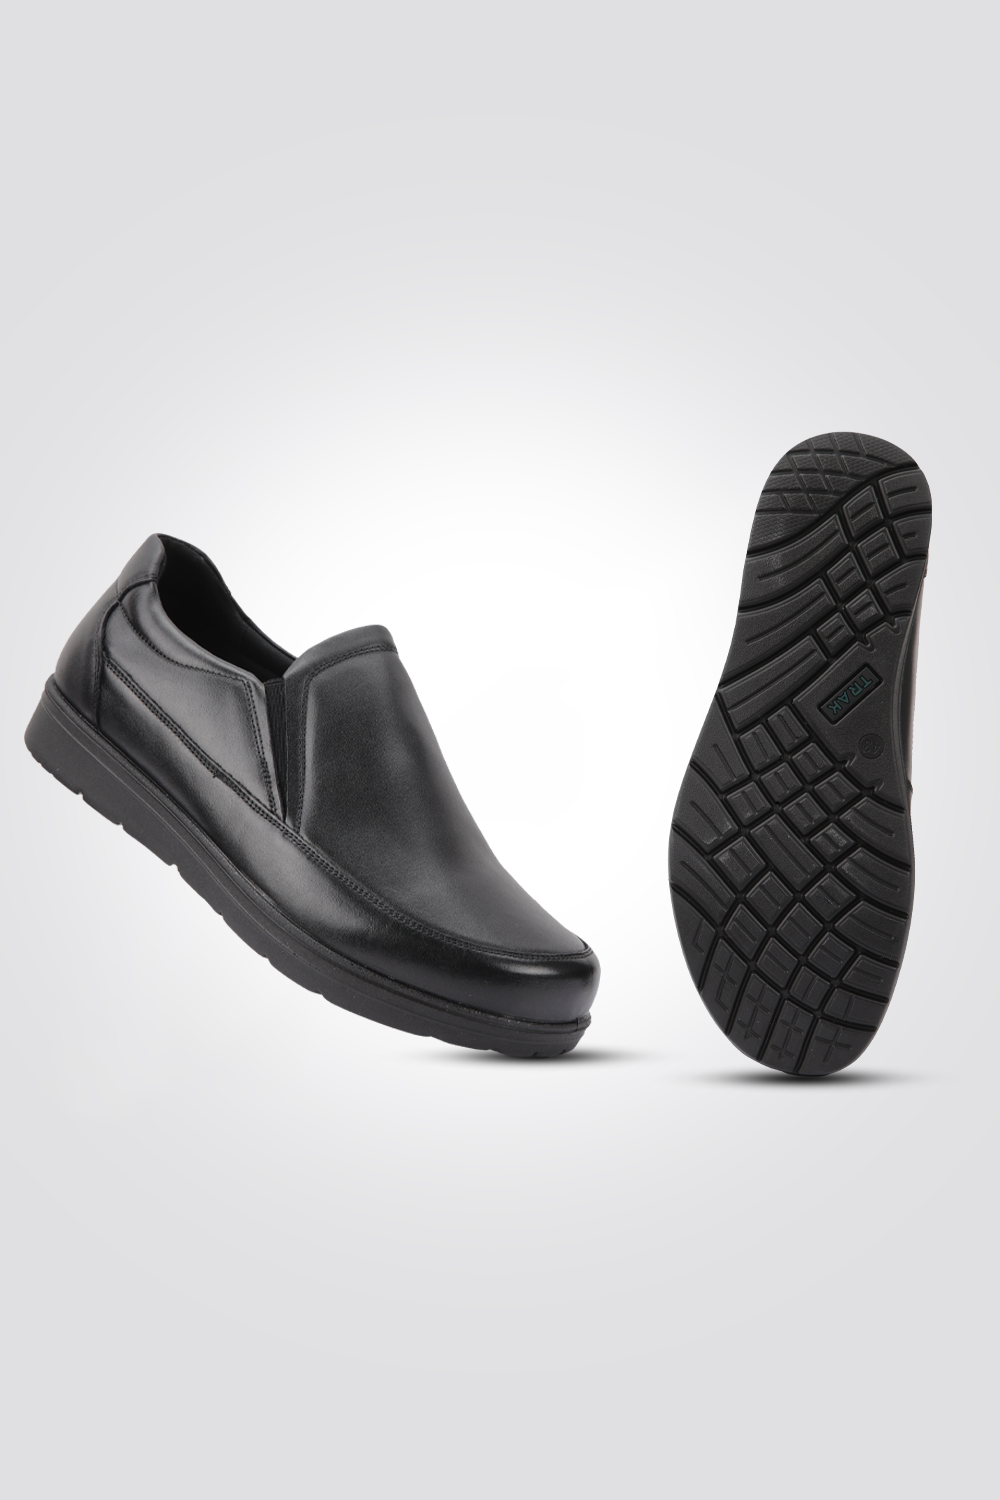 נעליים אלגנטיות דגם אוהד בצבע שחור